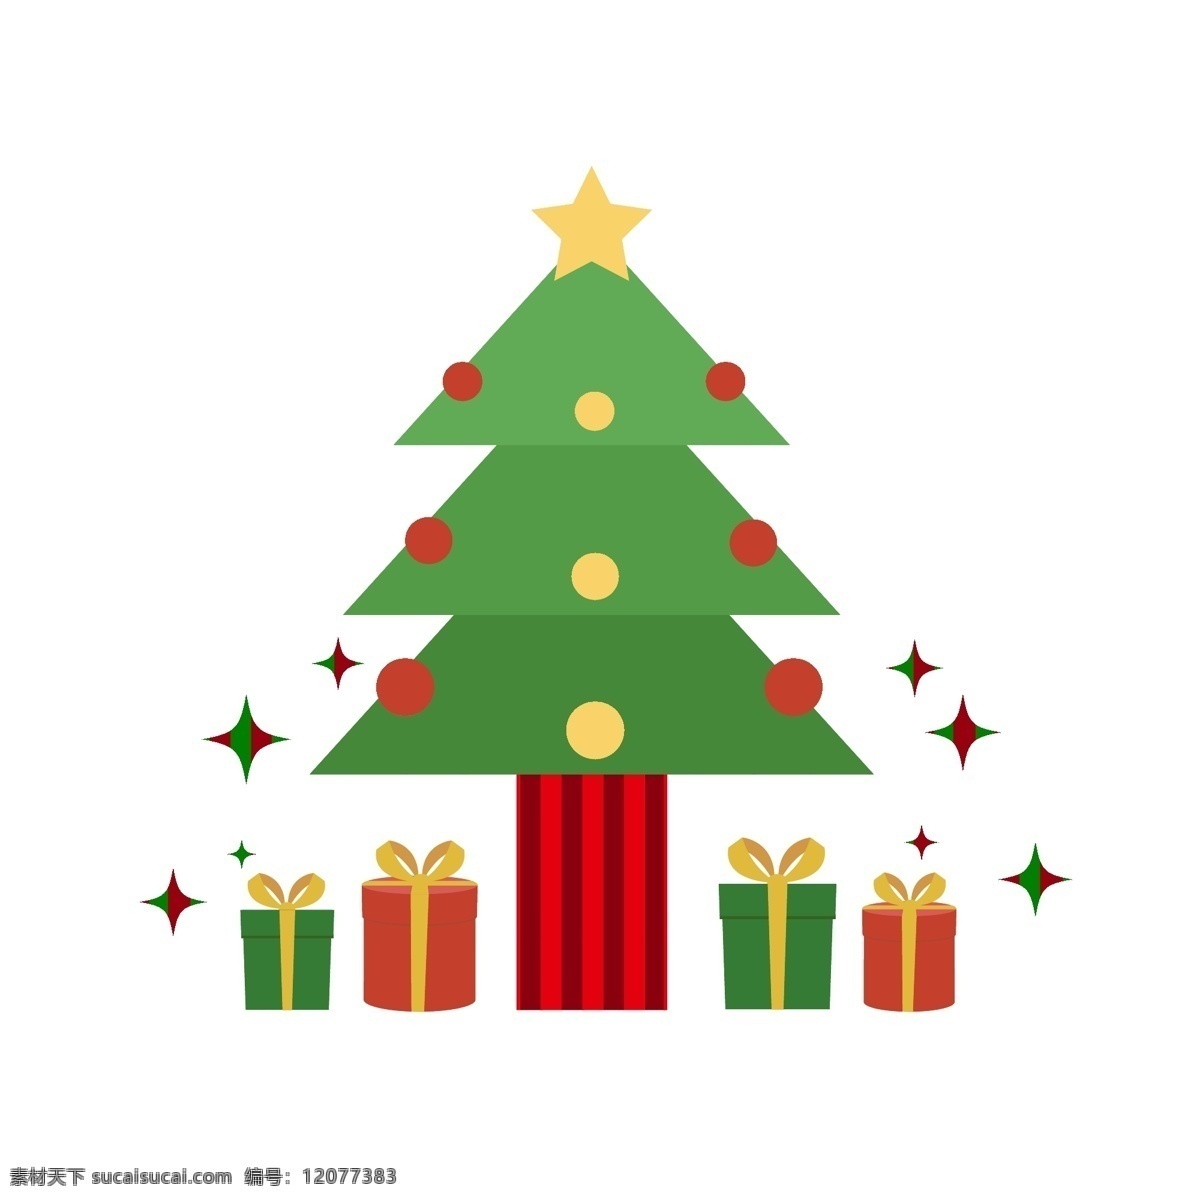 圣诞节 卡通 扁平 圣诞树 礼物 元素 可爱 彩色 海报 手绘 卡通手绘 圣诞 贺卡 装饰 图案 卡通装饰 边框 星星